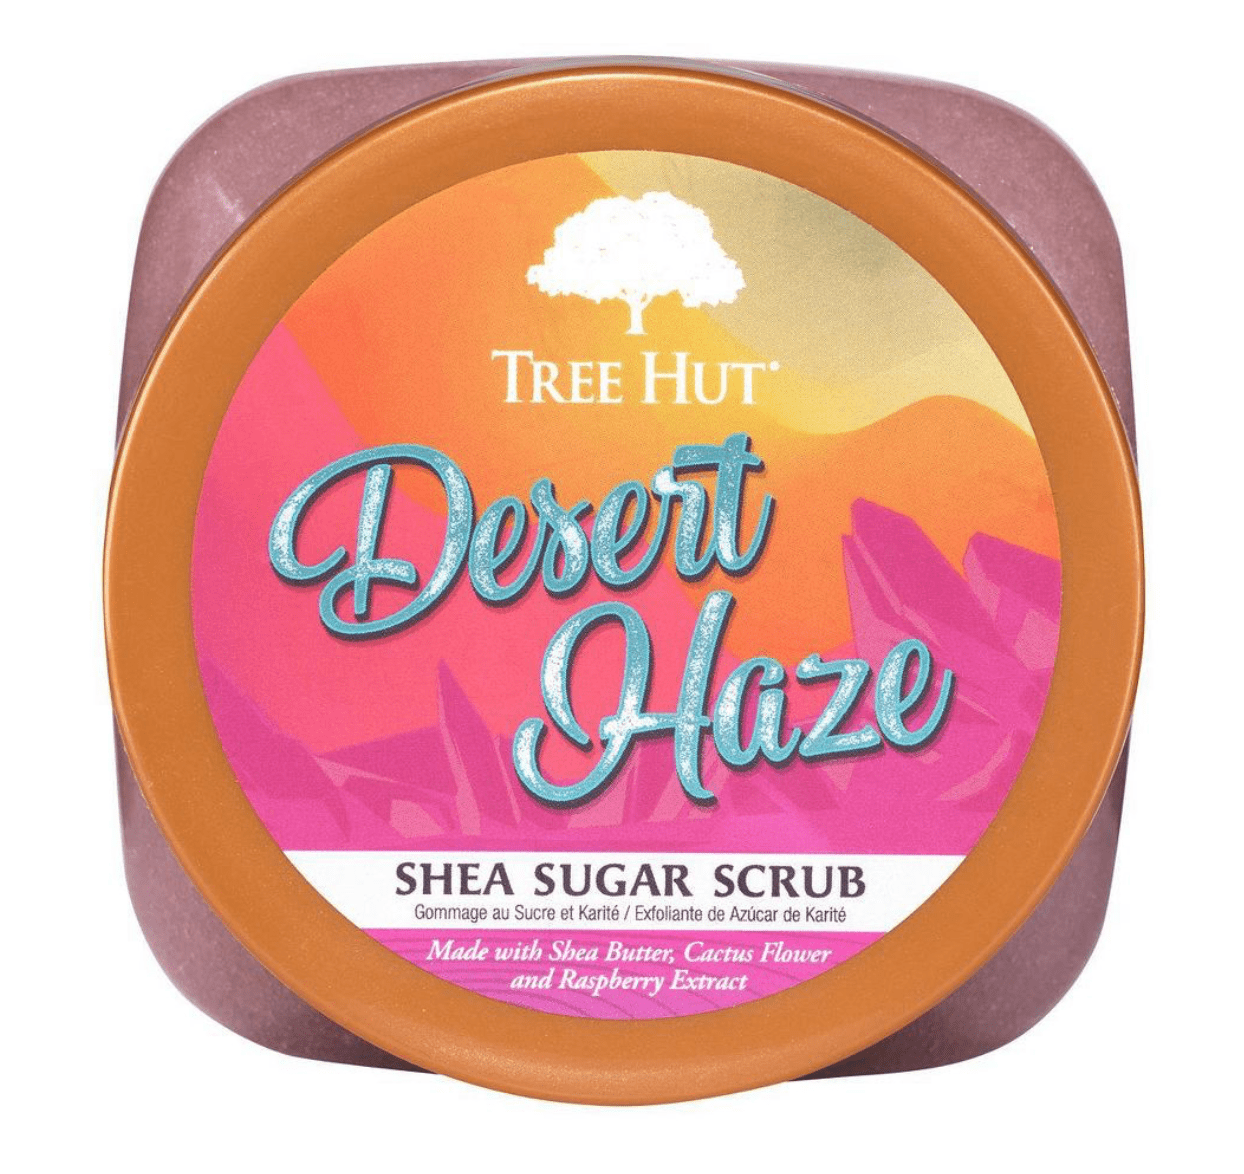 Tree hut - Body scrub "desert haze" - 510g - Tree Hut - Ethni Beauty Market